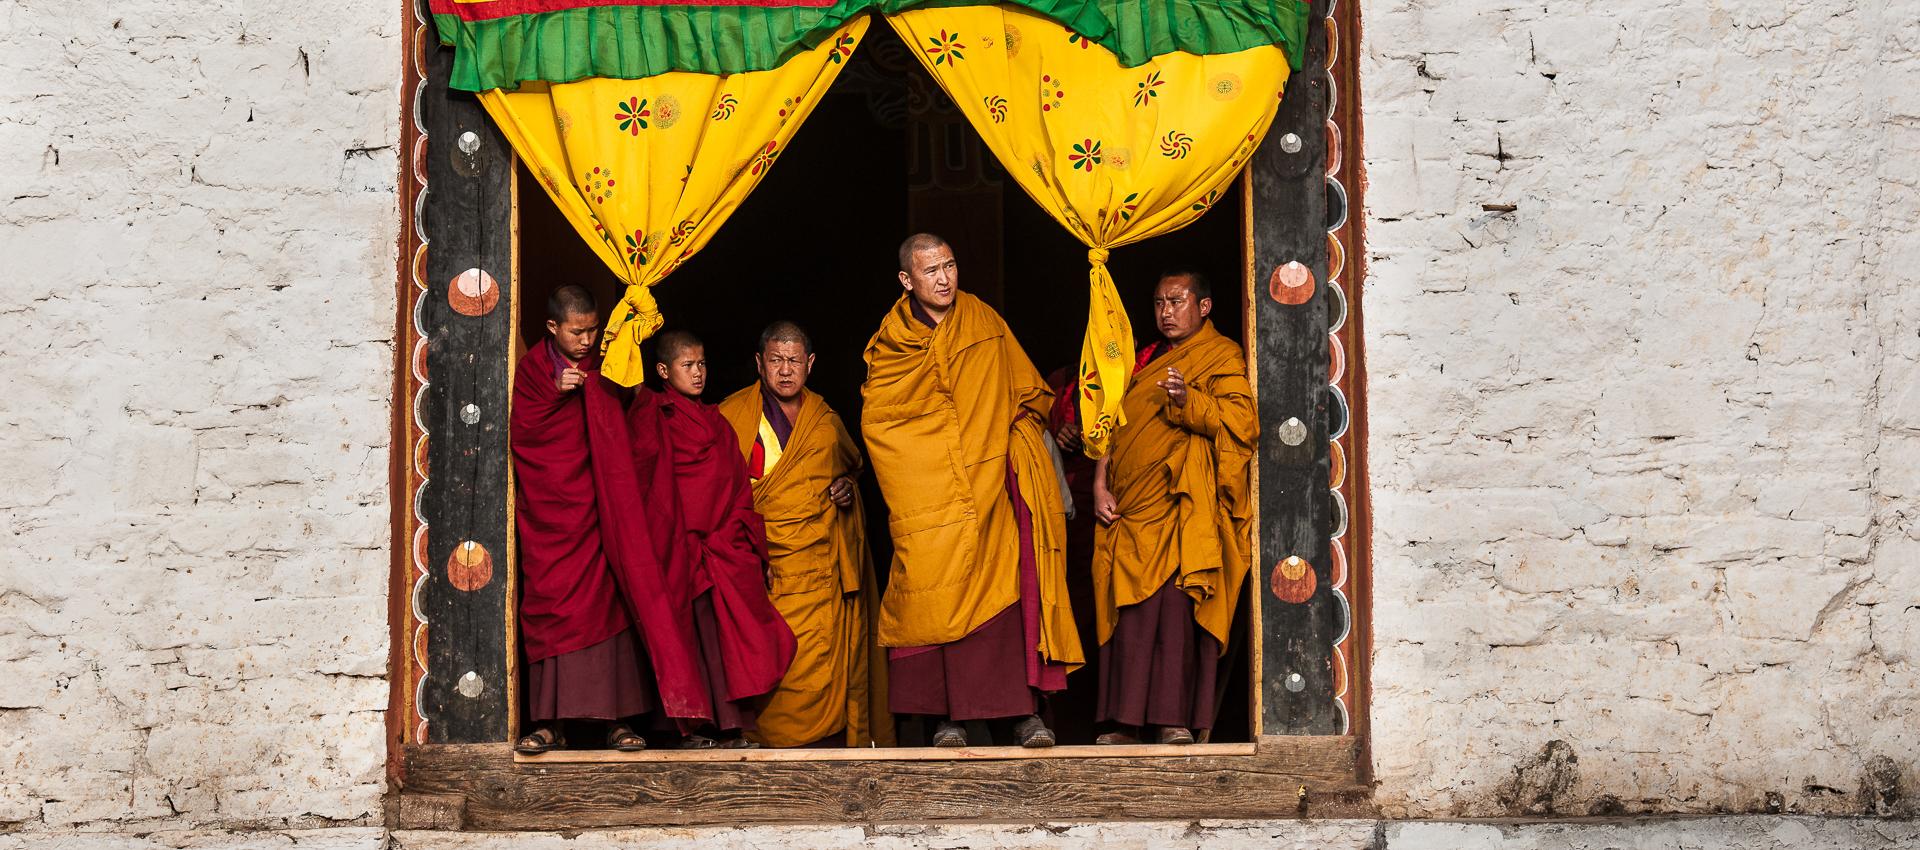 Moines dans un monastère au Tibet © David Ducoin